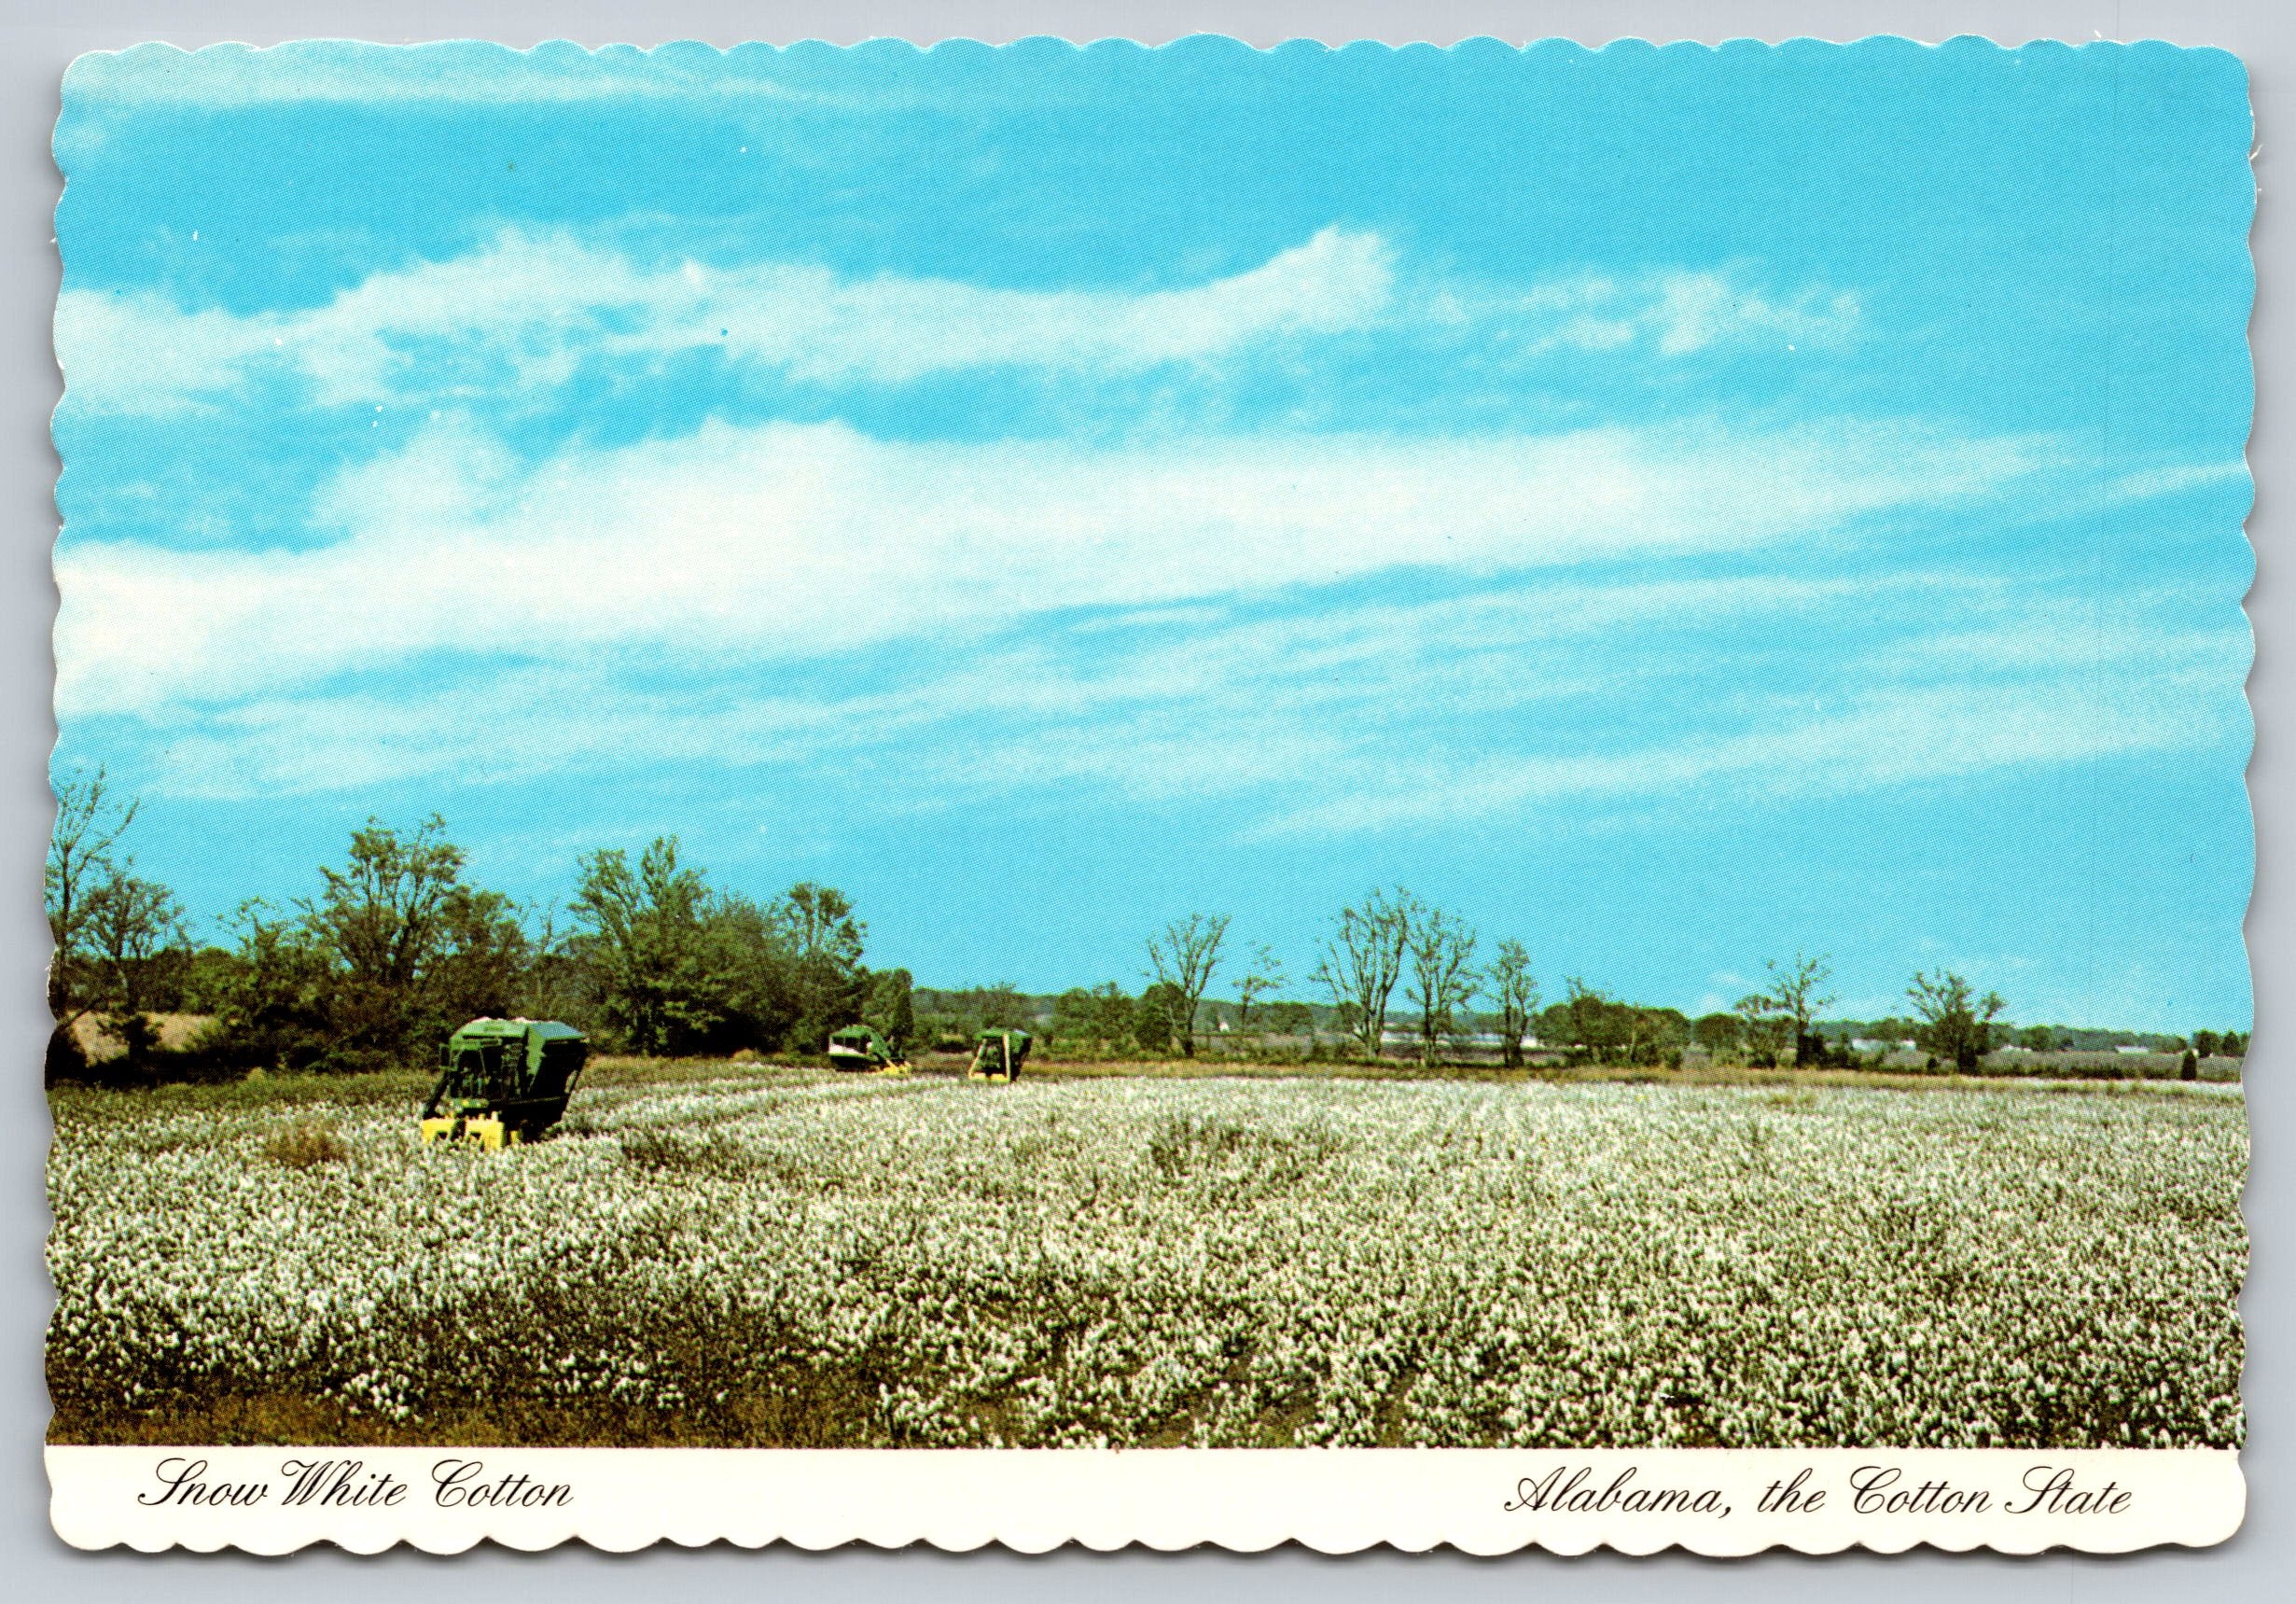 Snow White Cotton, Alabama, Vintage Post Card